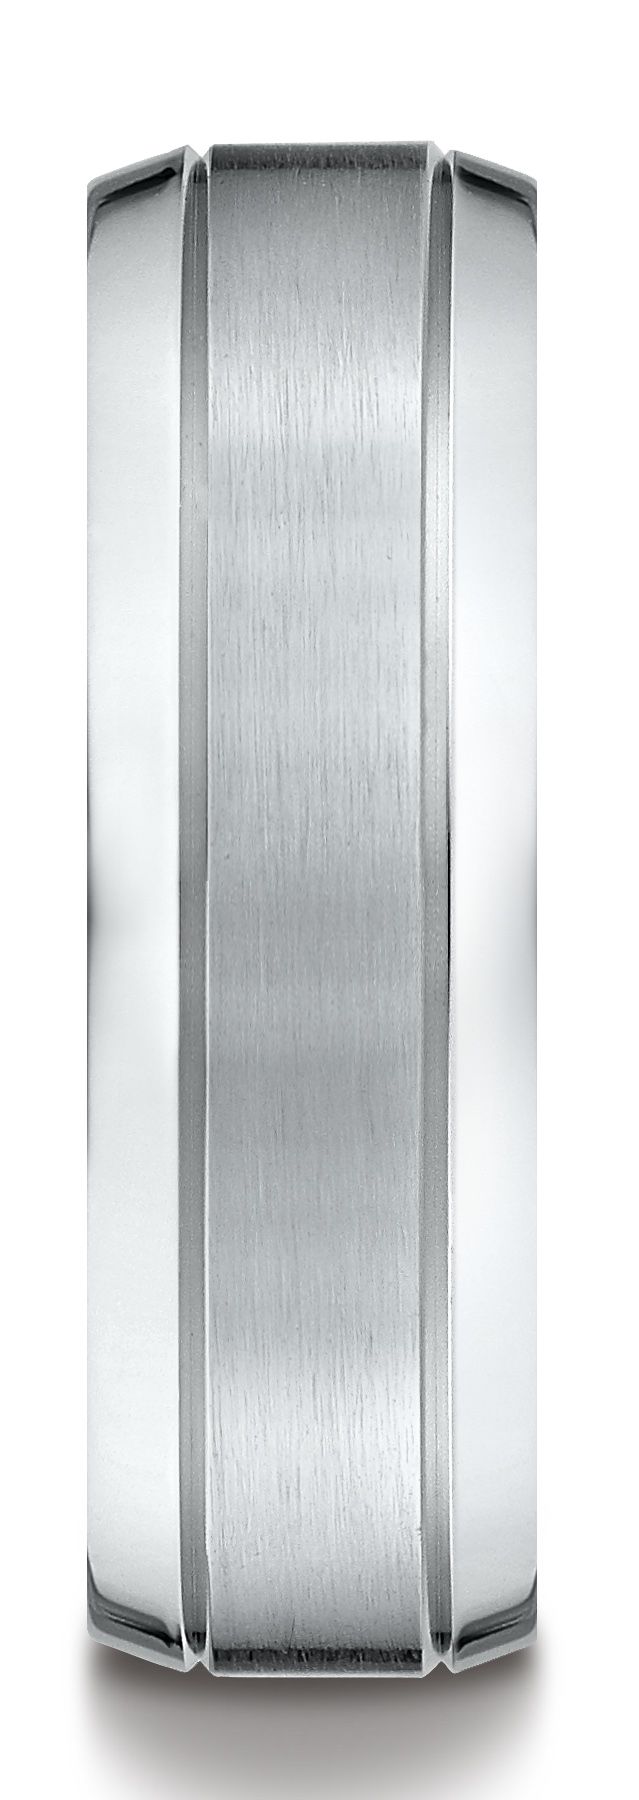 14k White Gold 7mm Comfort-fit Satin-finished High Polished Beveled Edge Carved Design Band